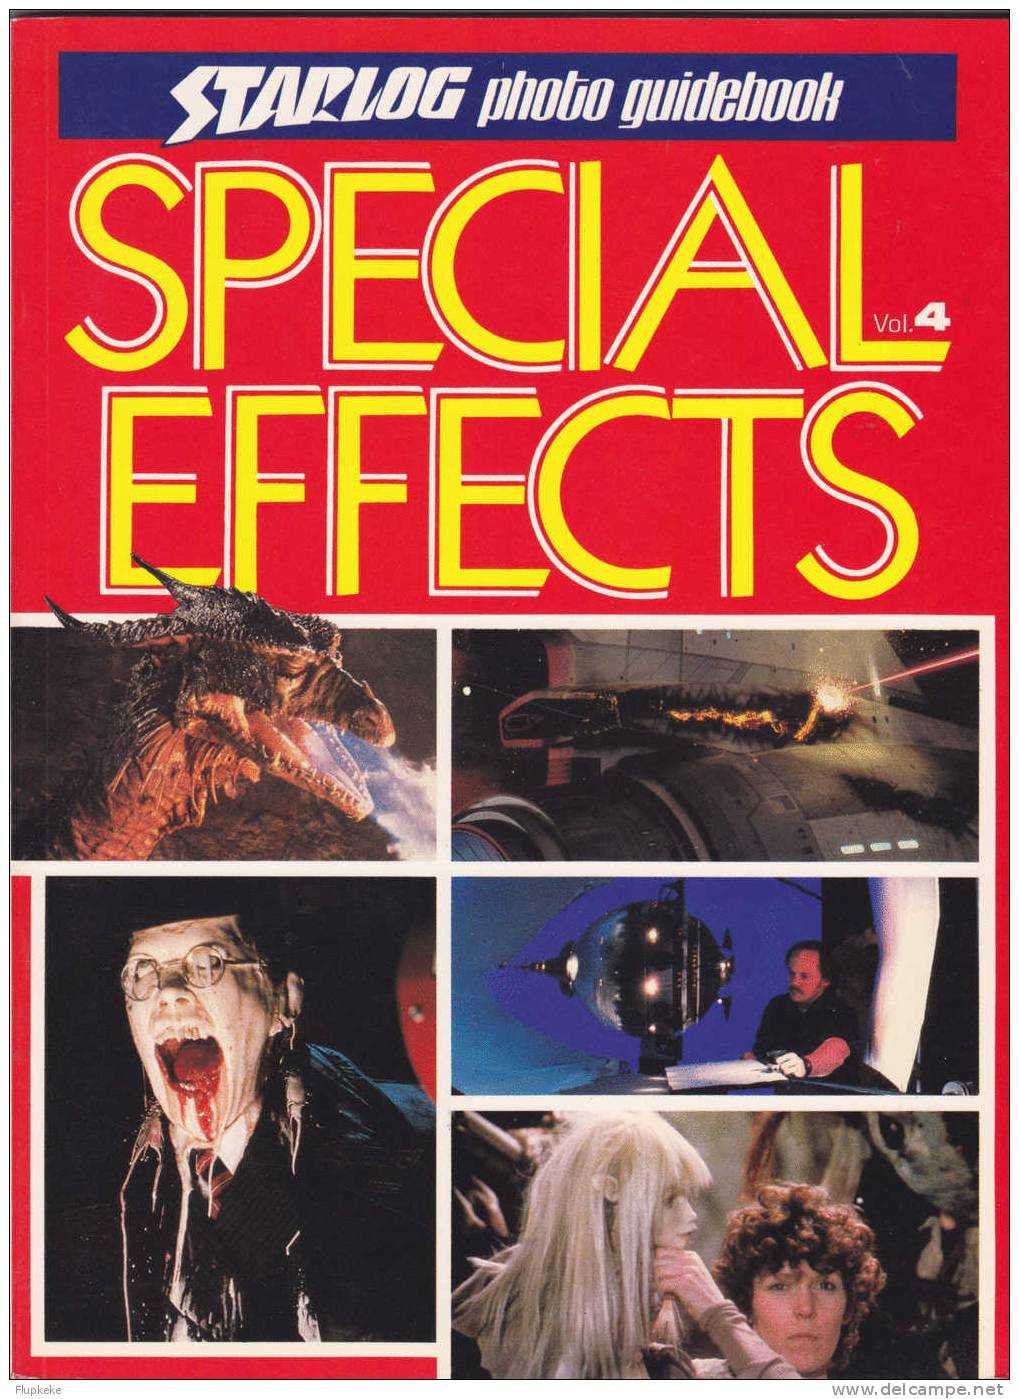 Starlog Photo Guidebook Special Effect Volume 4 David Hutchison Starlog Press - Unterhaltung